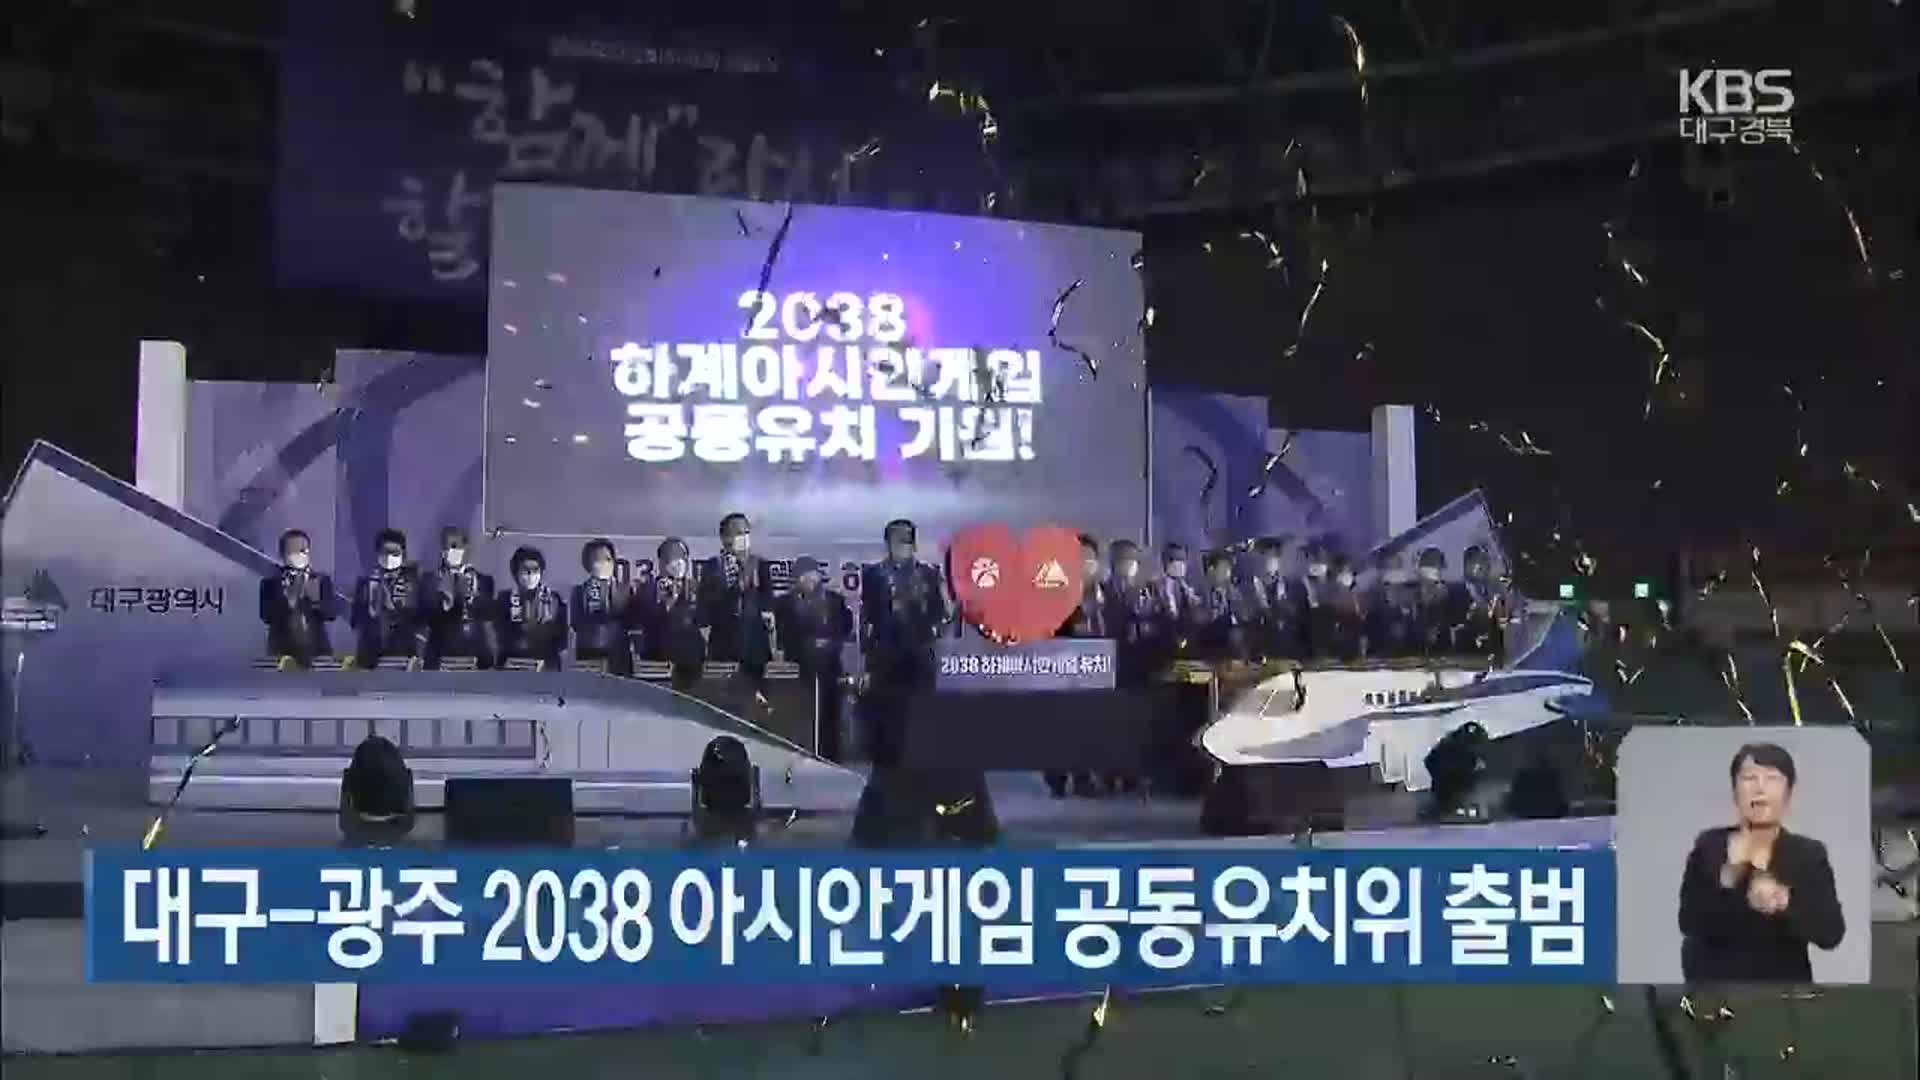 대구-광주 2038 아시안게임 공동유치위 출범